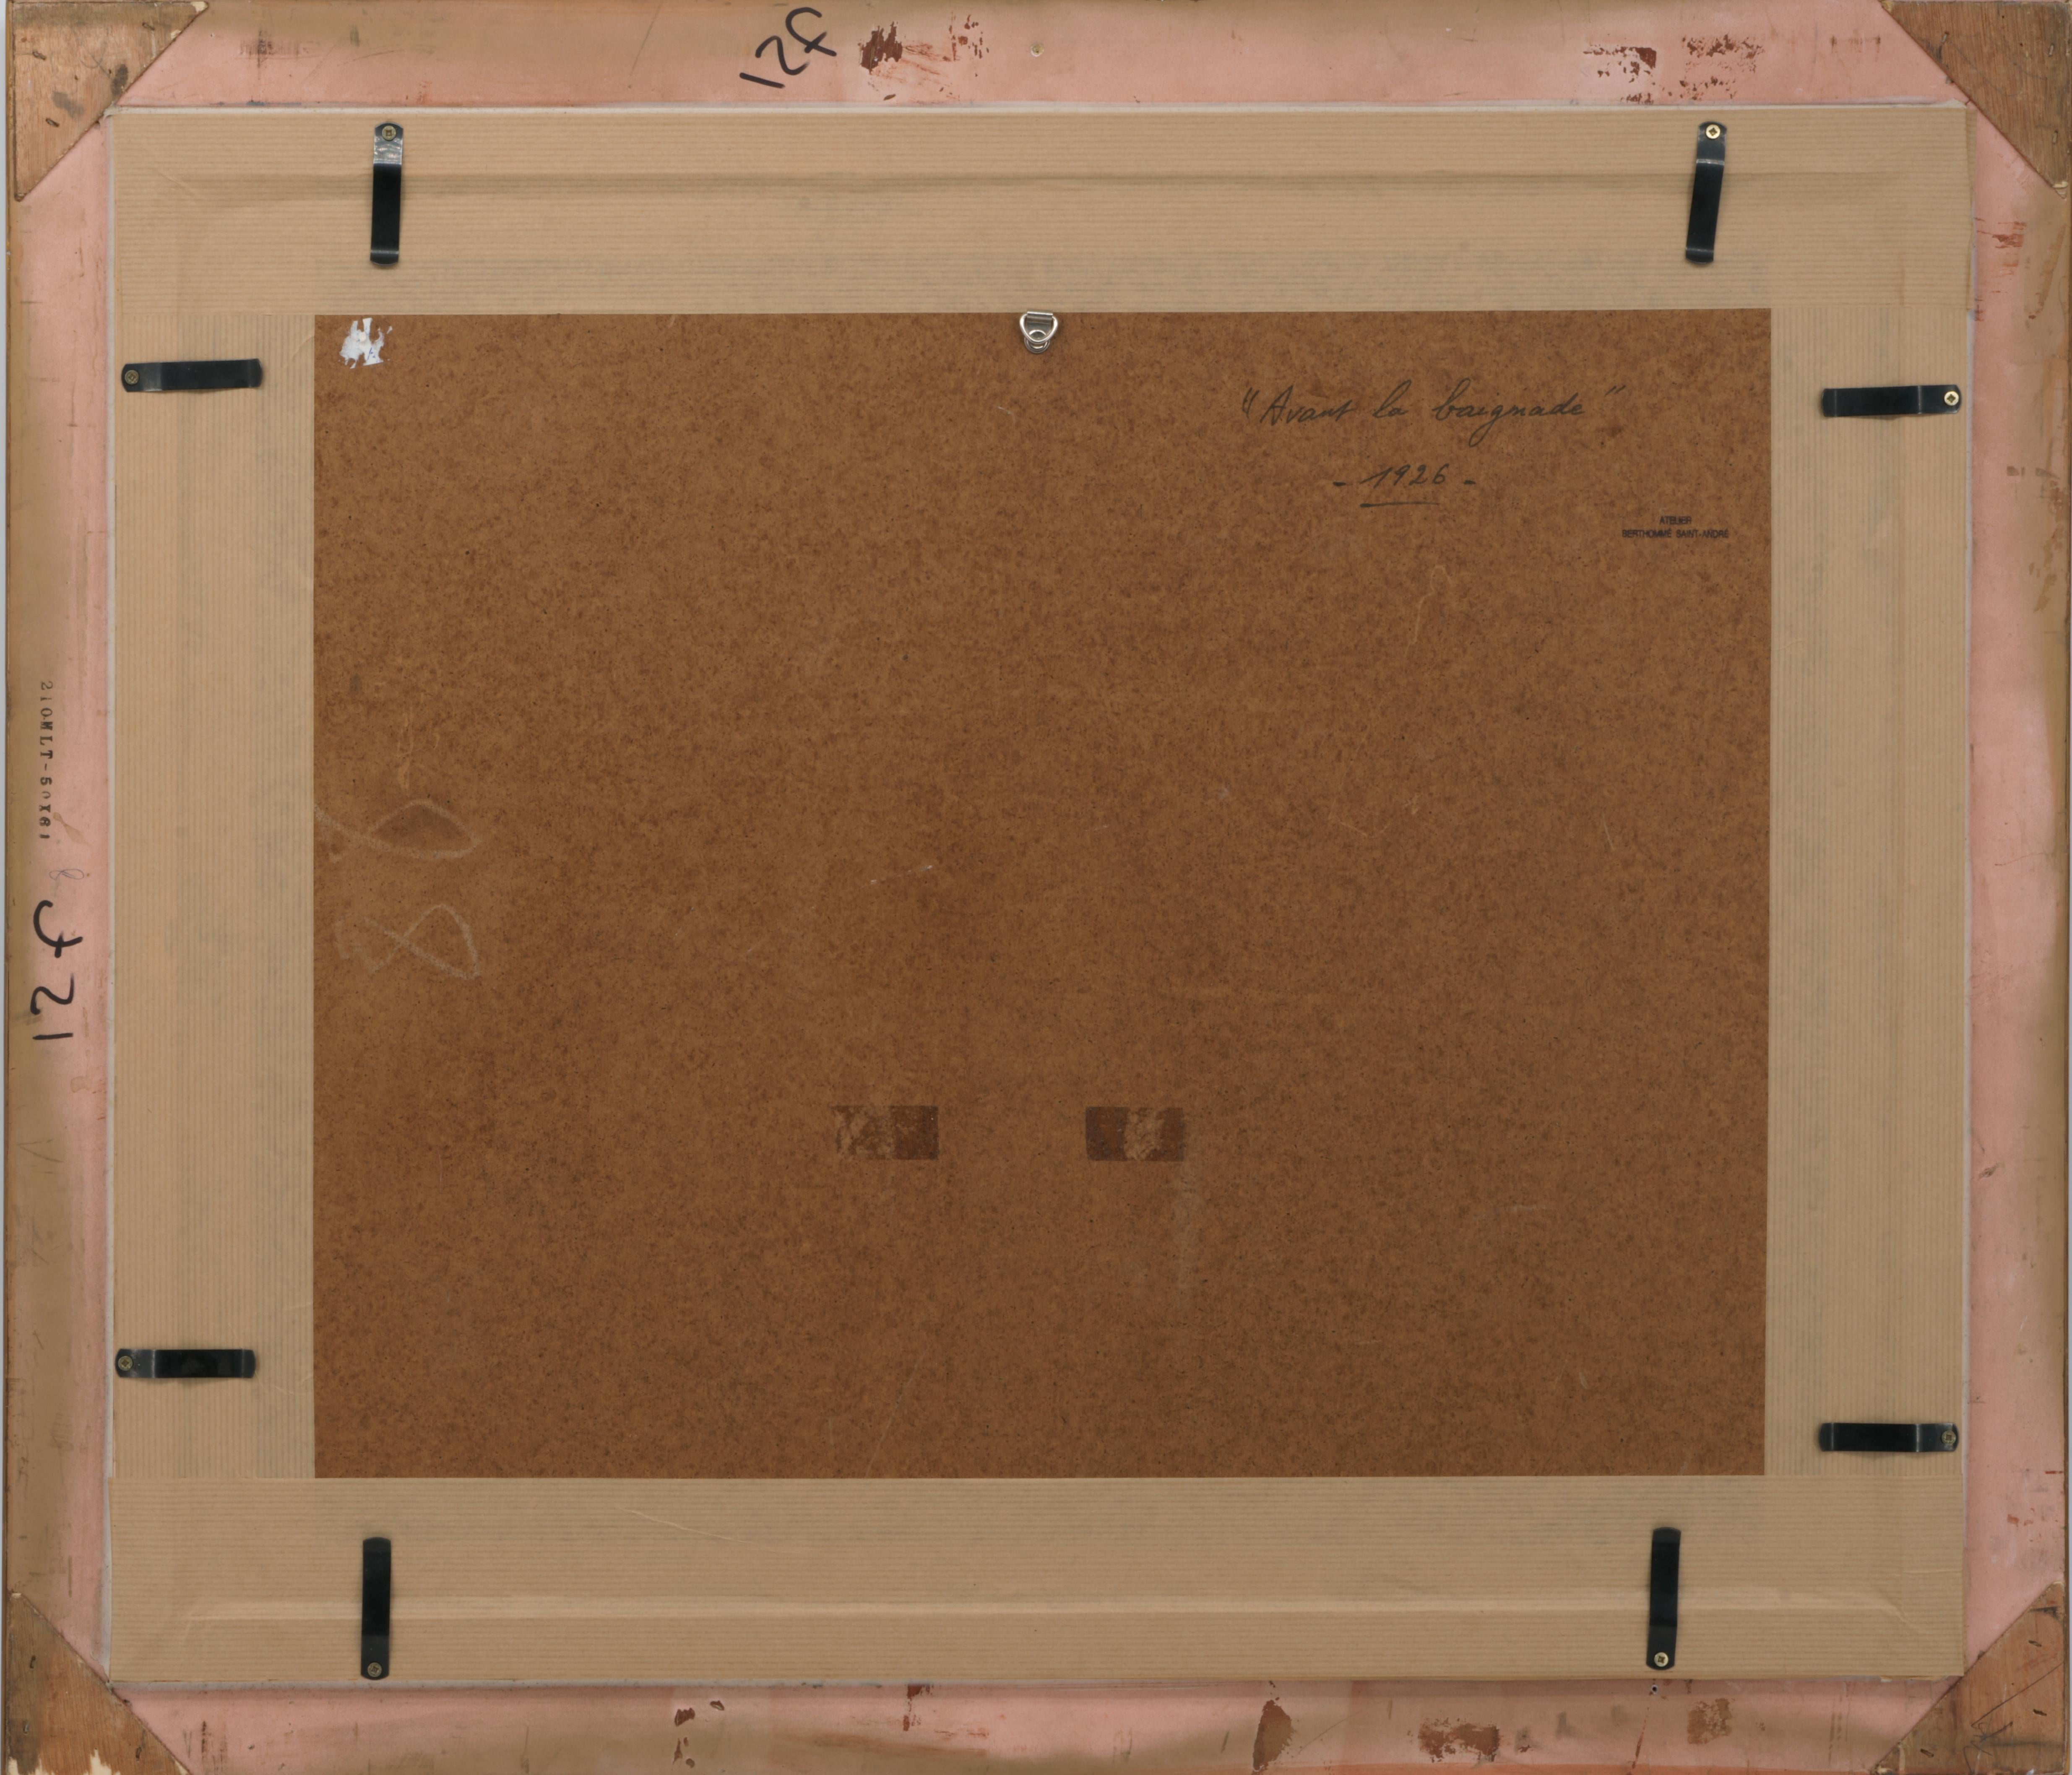 Aquarell von  Louis BERTHOMME SAINT-ANDRE, Frankreich, 1926. Vor dem Baden. Mit Rahmen: 74x63,5 cm - 29.1x25 inches ; ohne Rahmen, nur das Aquarell: 50x36 cm - 19.7x14.2 inches. Signiert unten rechts 